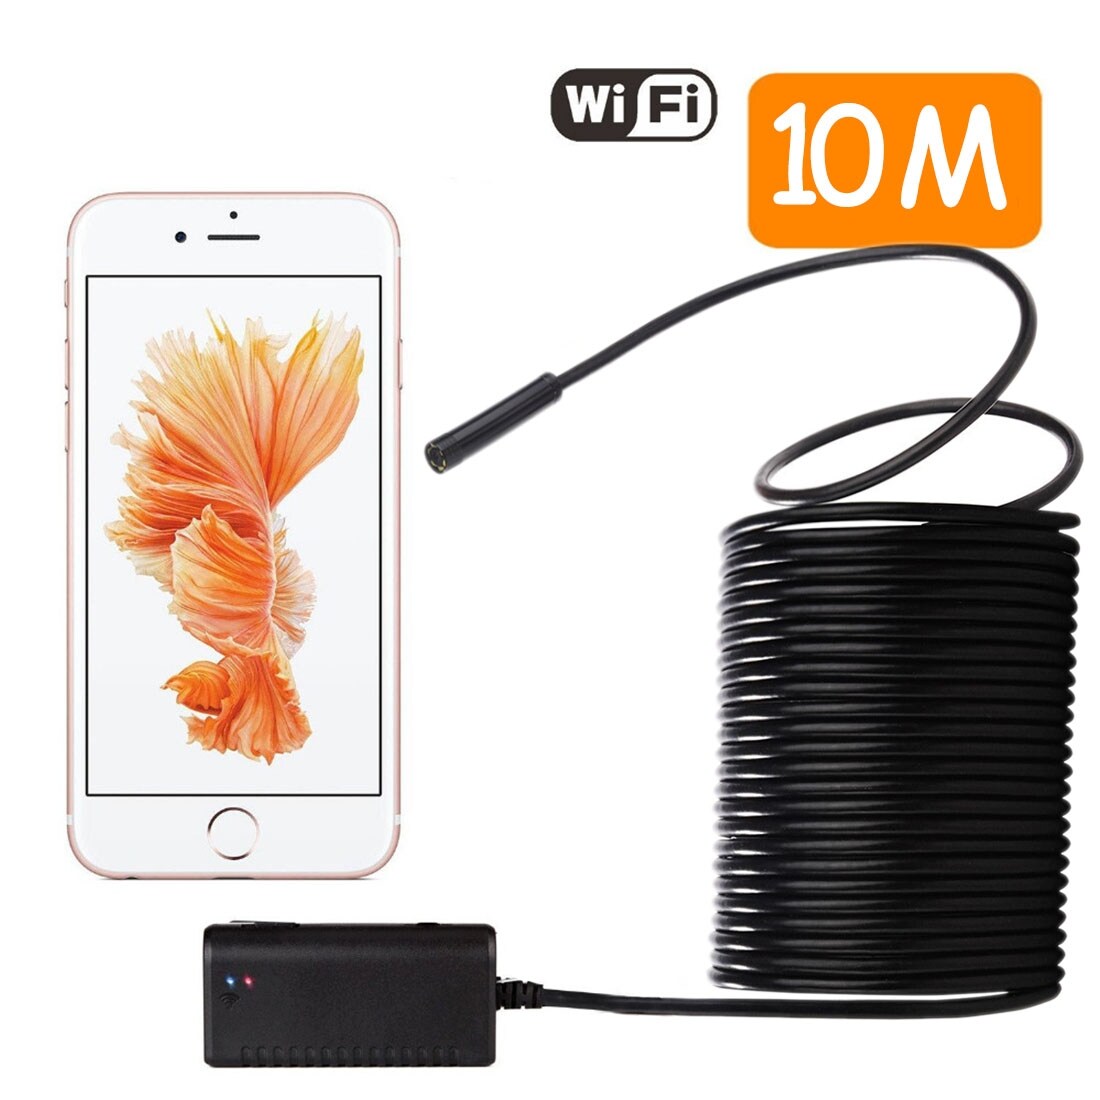 WiFi 10M Tarkastuskamera Matkapuhelimelle - Android & iOS